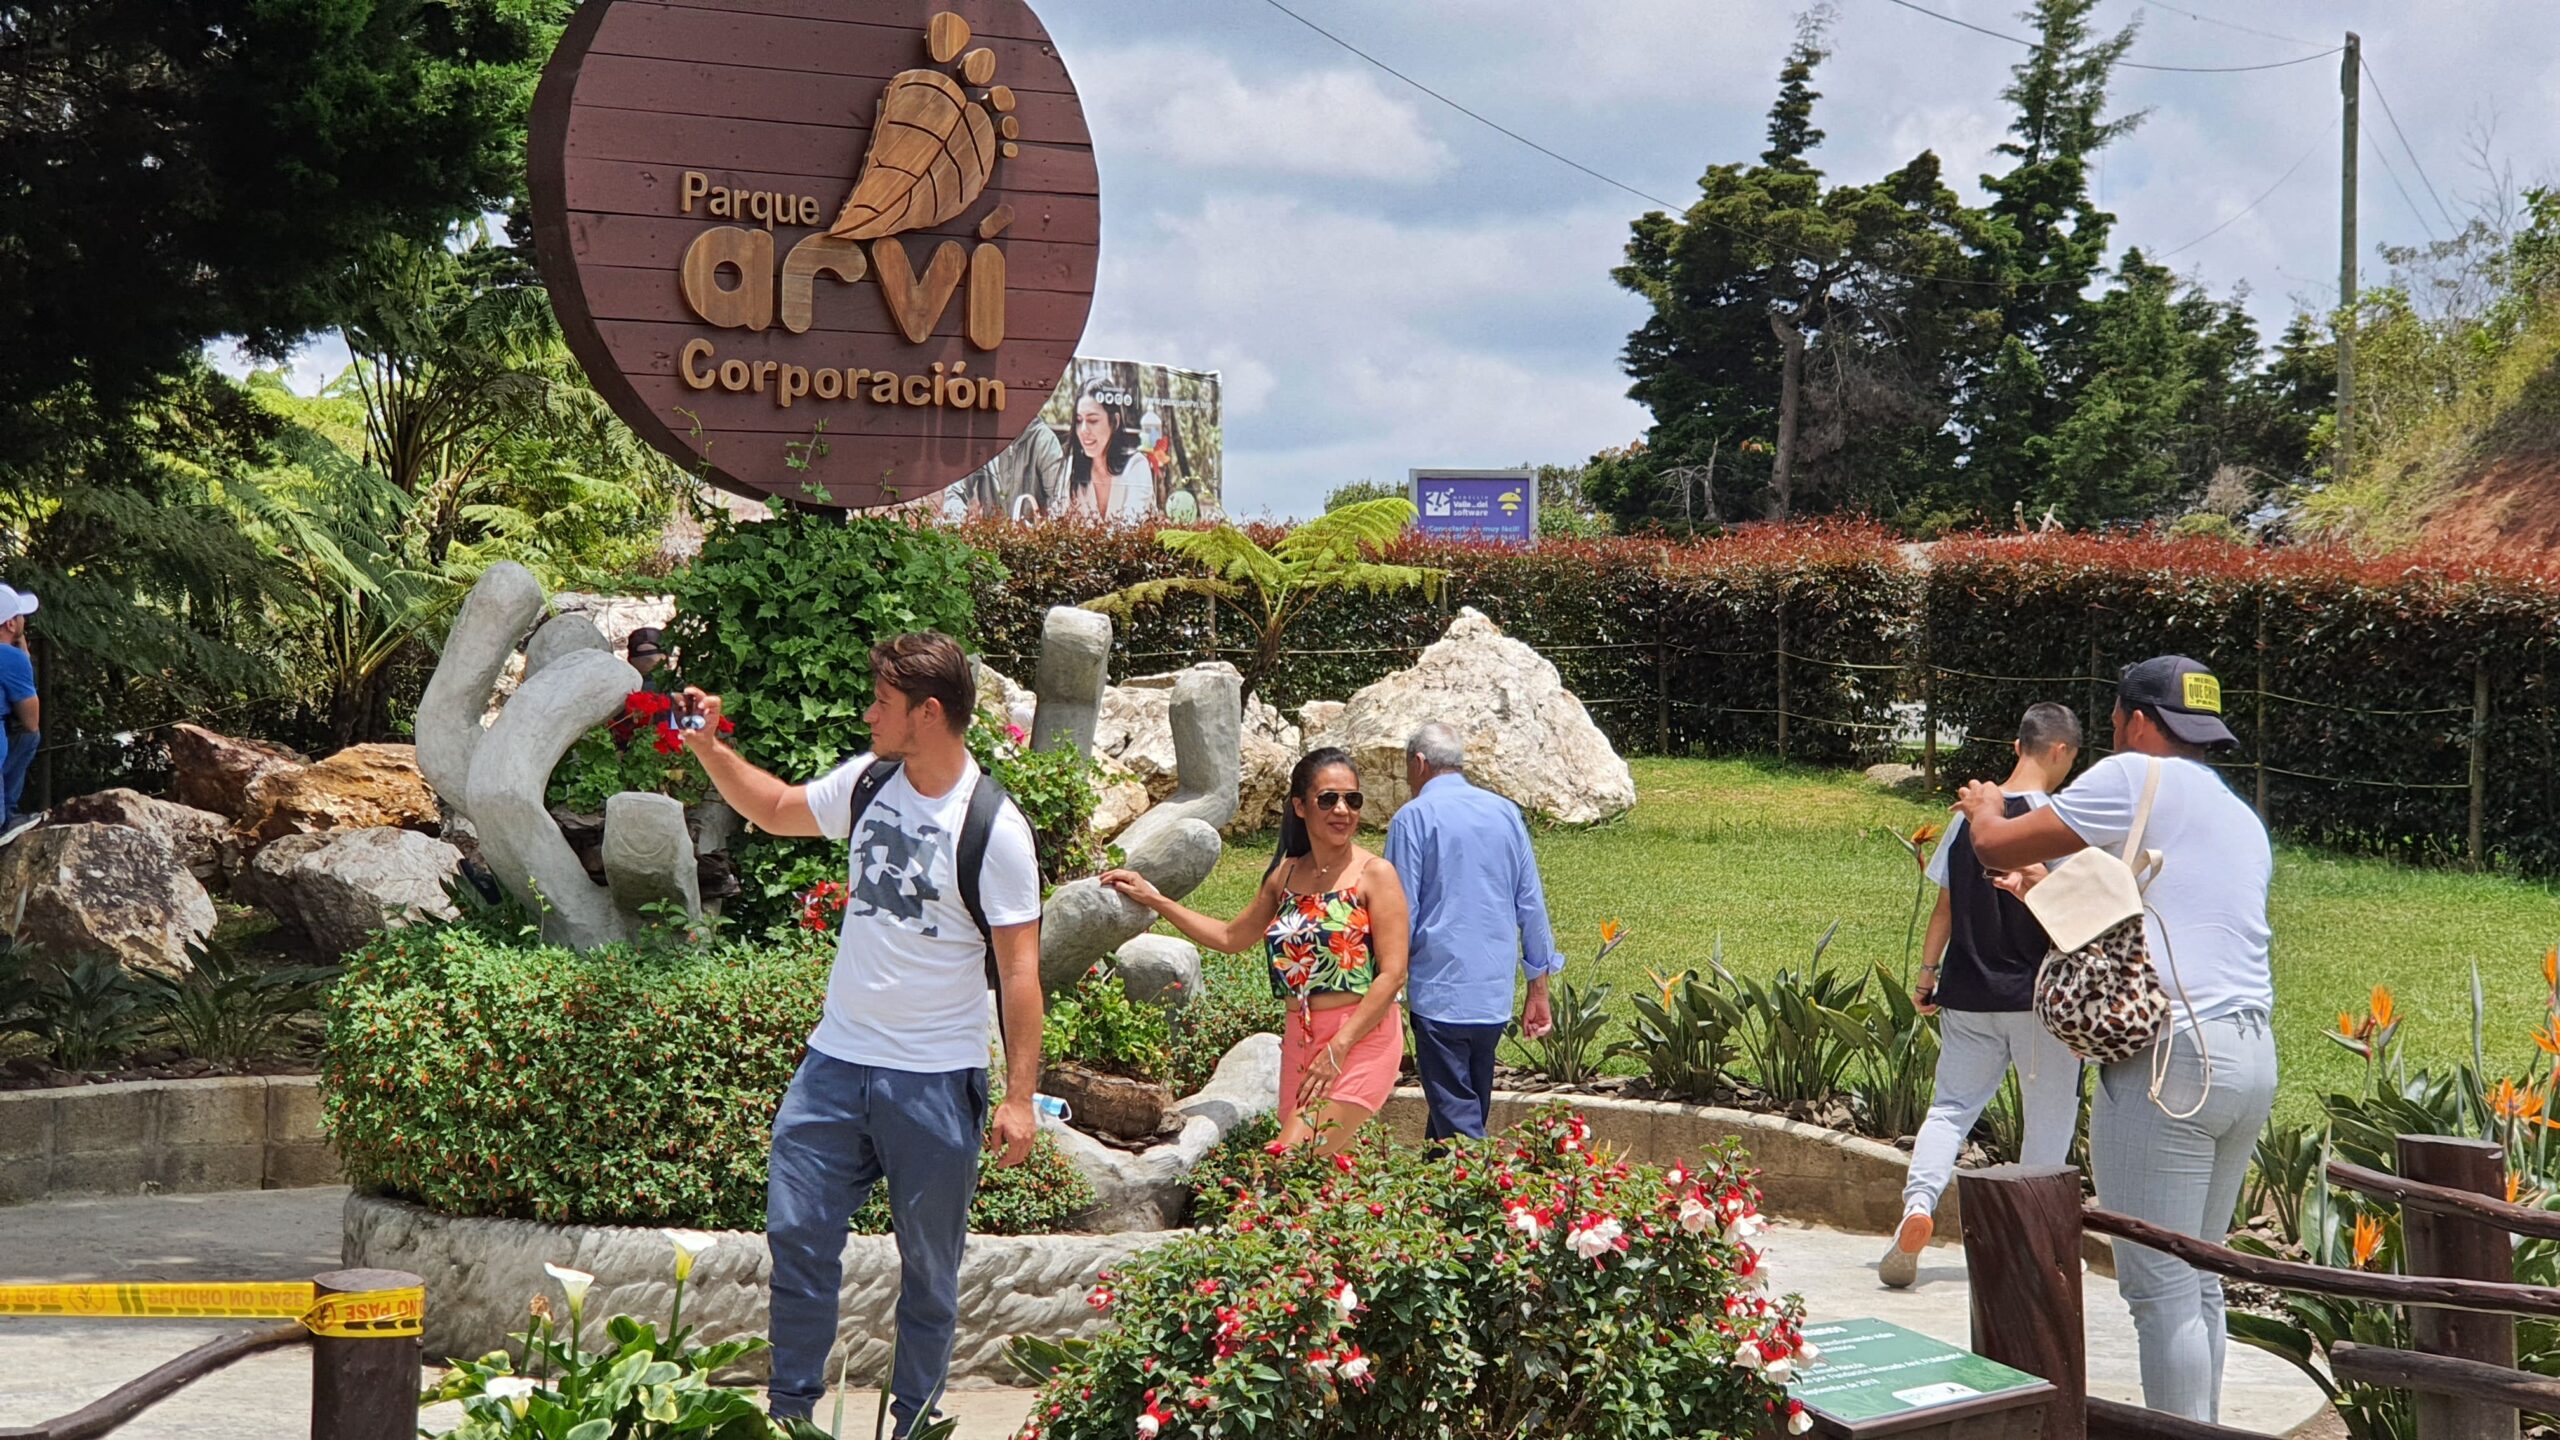 El Parque Arví atrajo multitudes con su belleza natural y actividades turísticas durante la Semana Santa